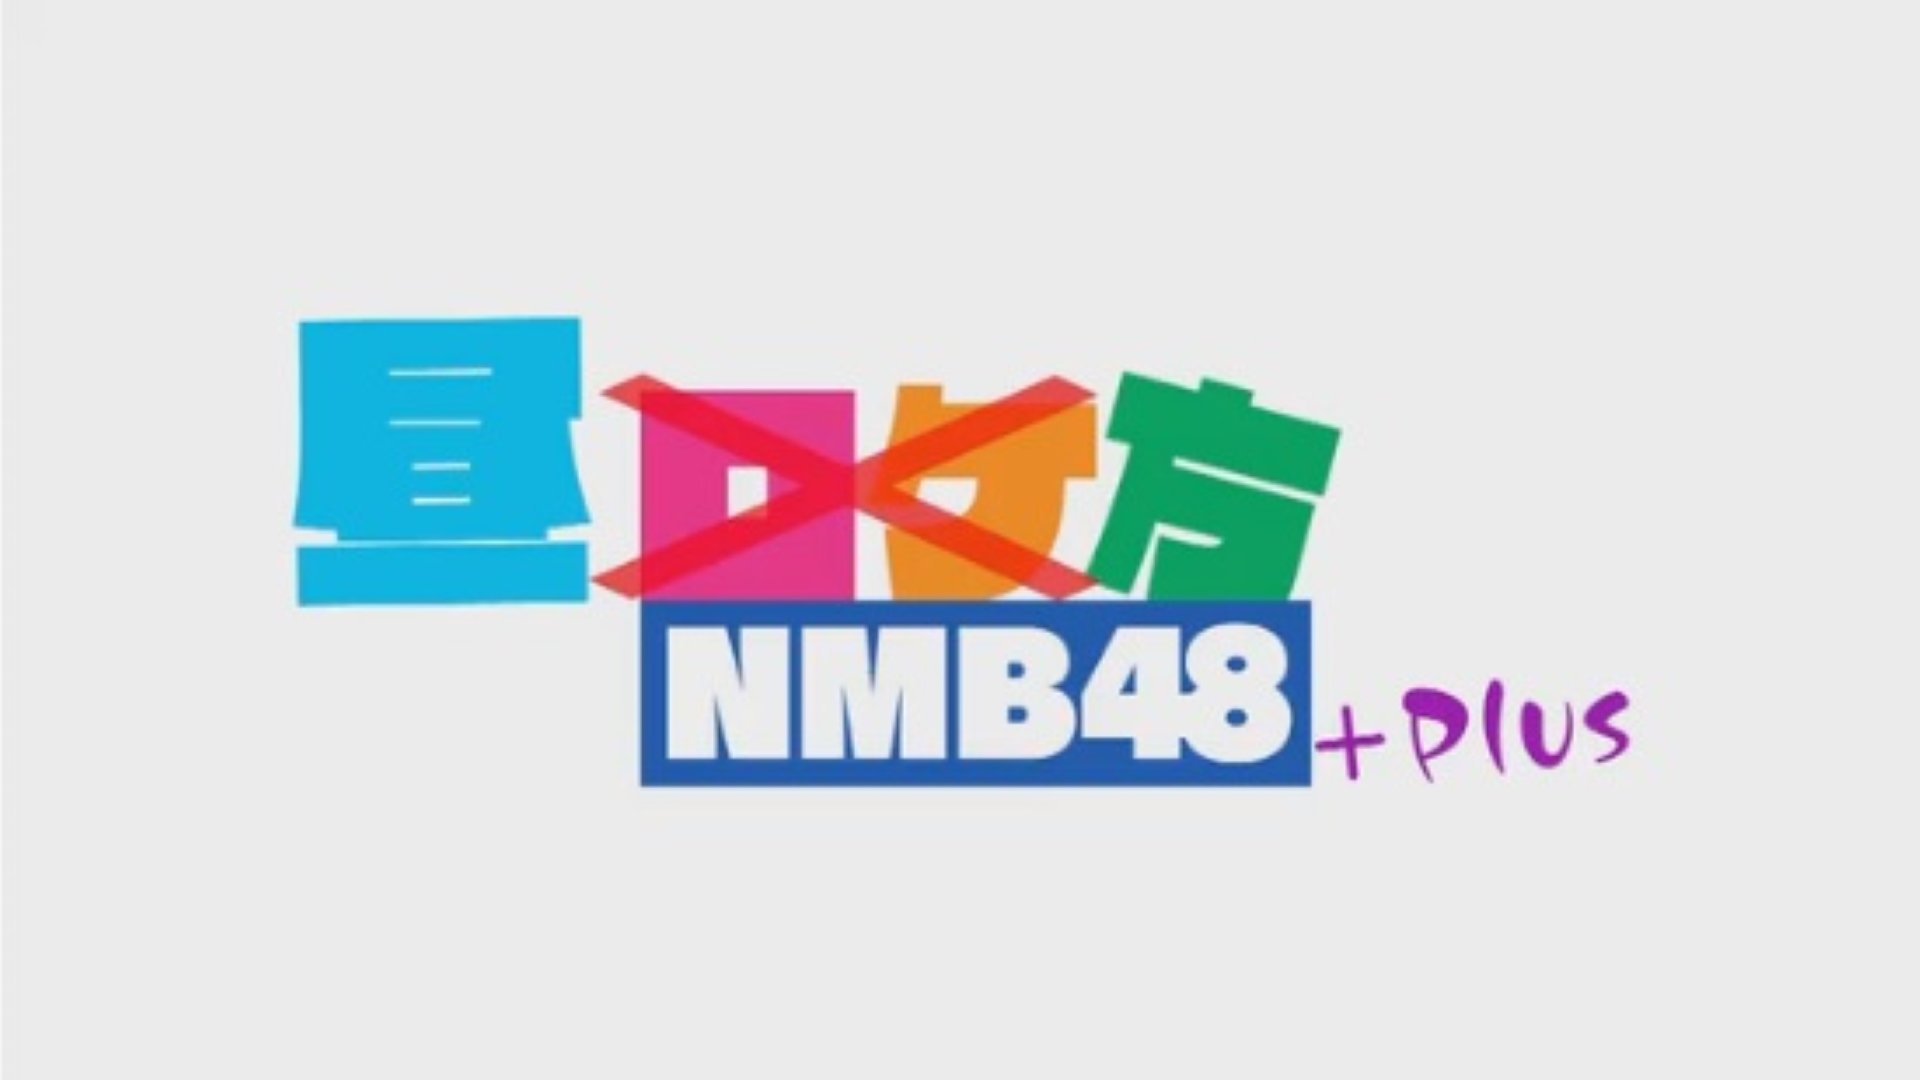 「昼方NMB48+」大好評につき見逃し配信が12月2日まで延長決定!